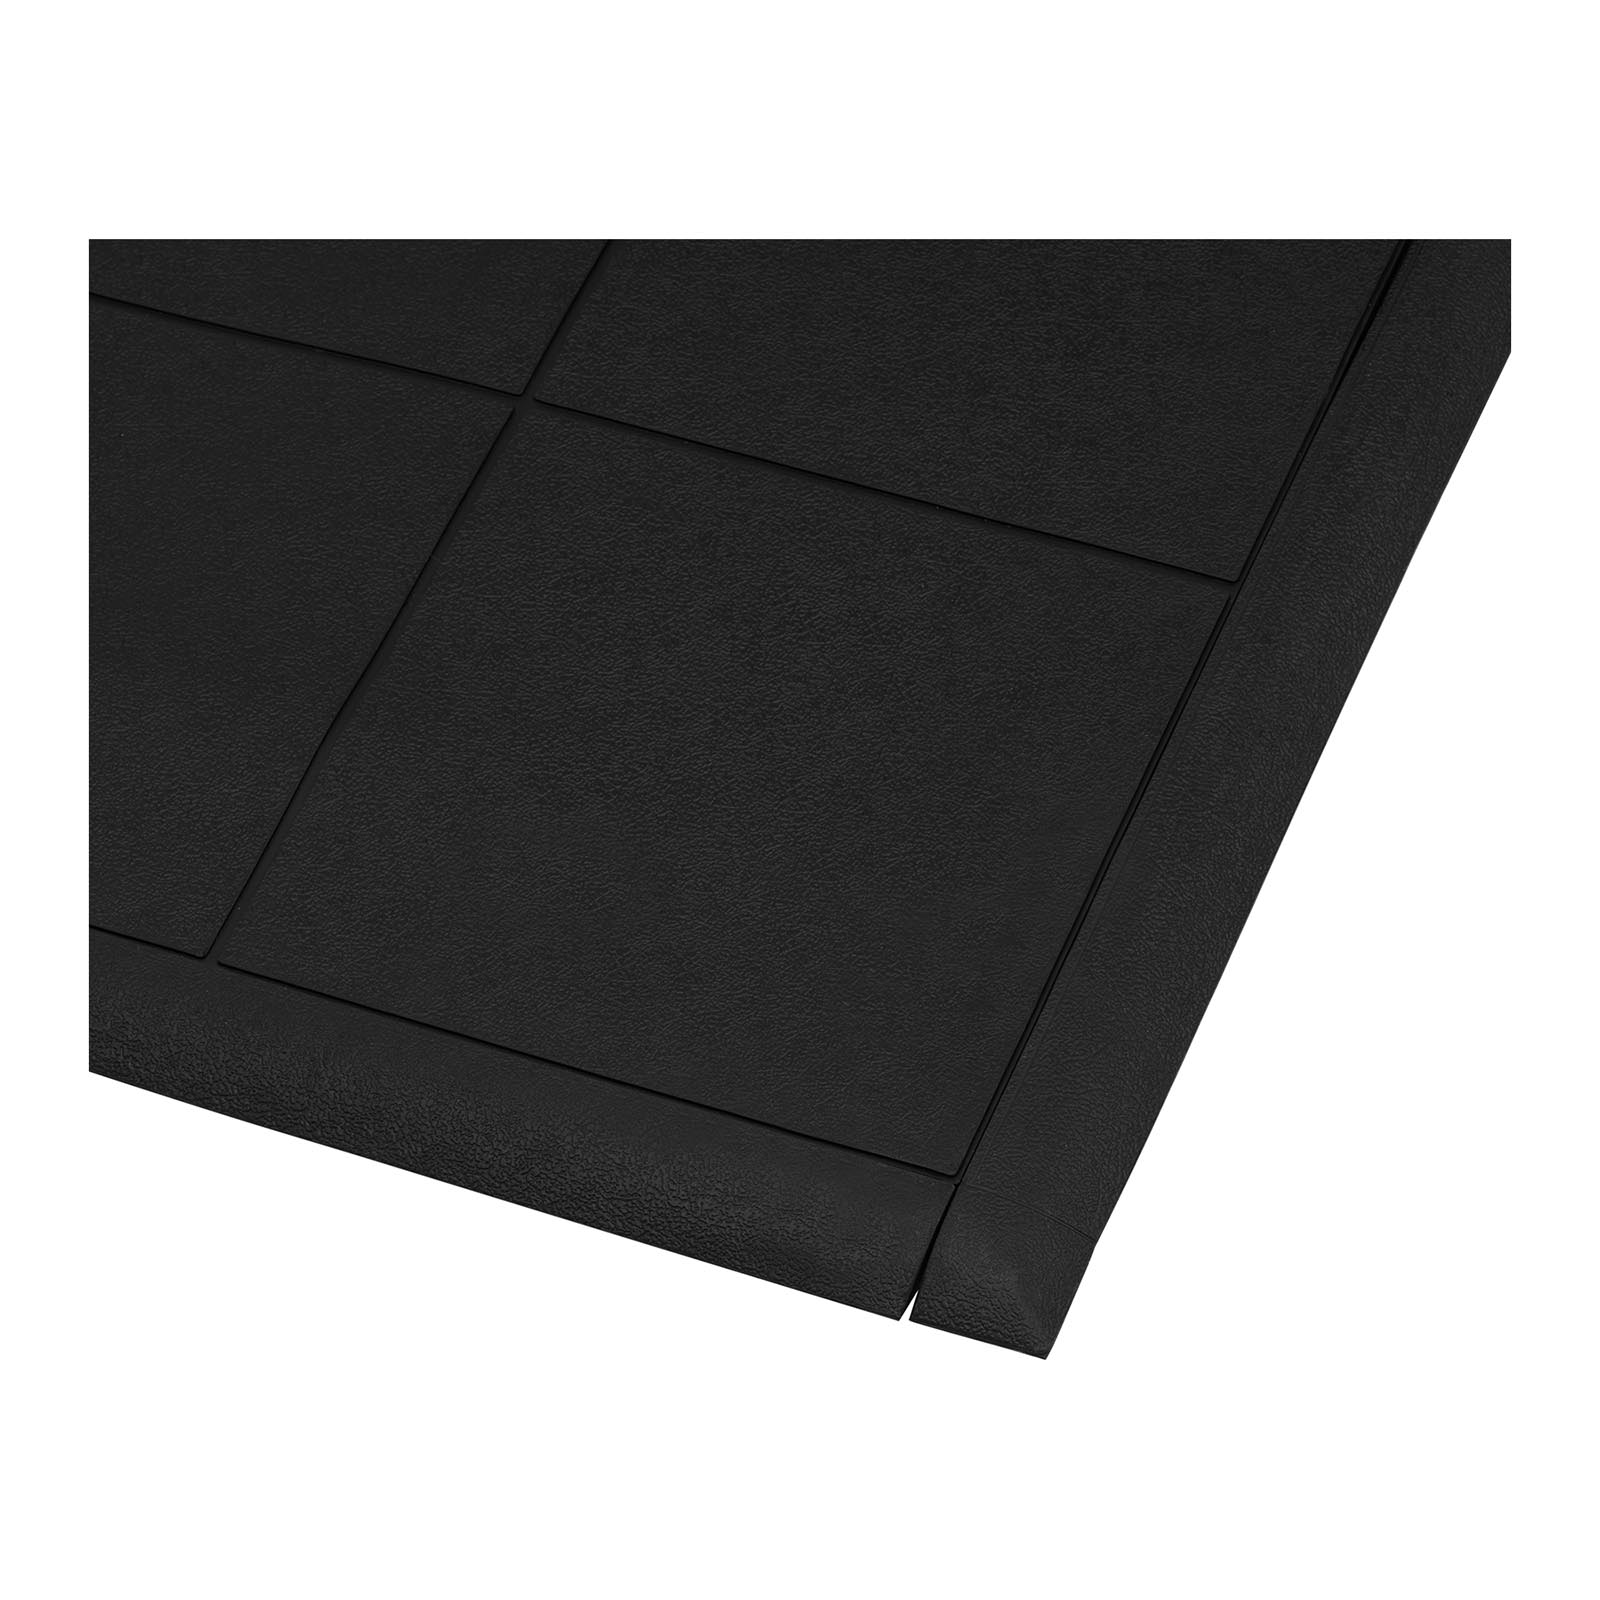 Záróprofil álláskönnyítő szőnyeghez - 975 x 72 mm - a 10030772-es cikkszámmal jelölt álláskönnyítő szőnyeghez